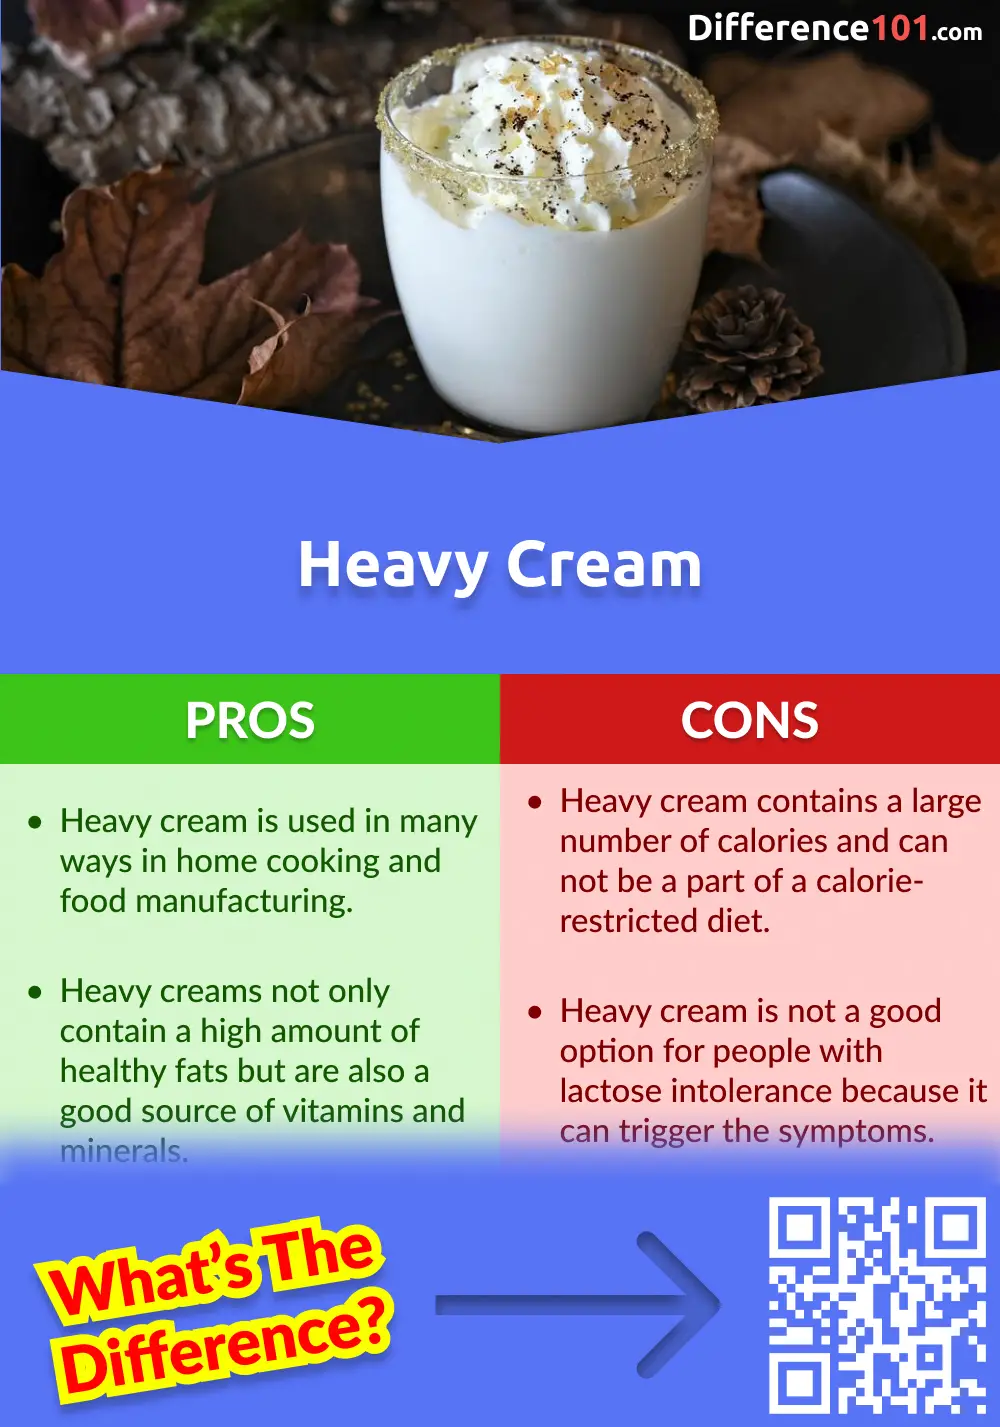 Heavy Cream Pros and Cons